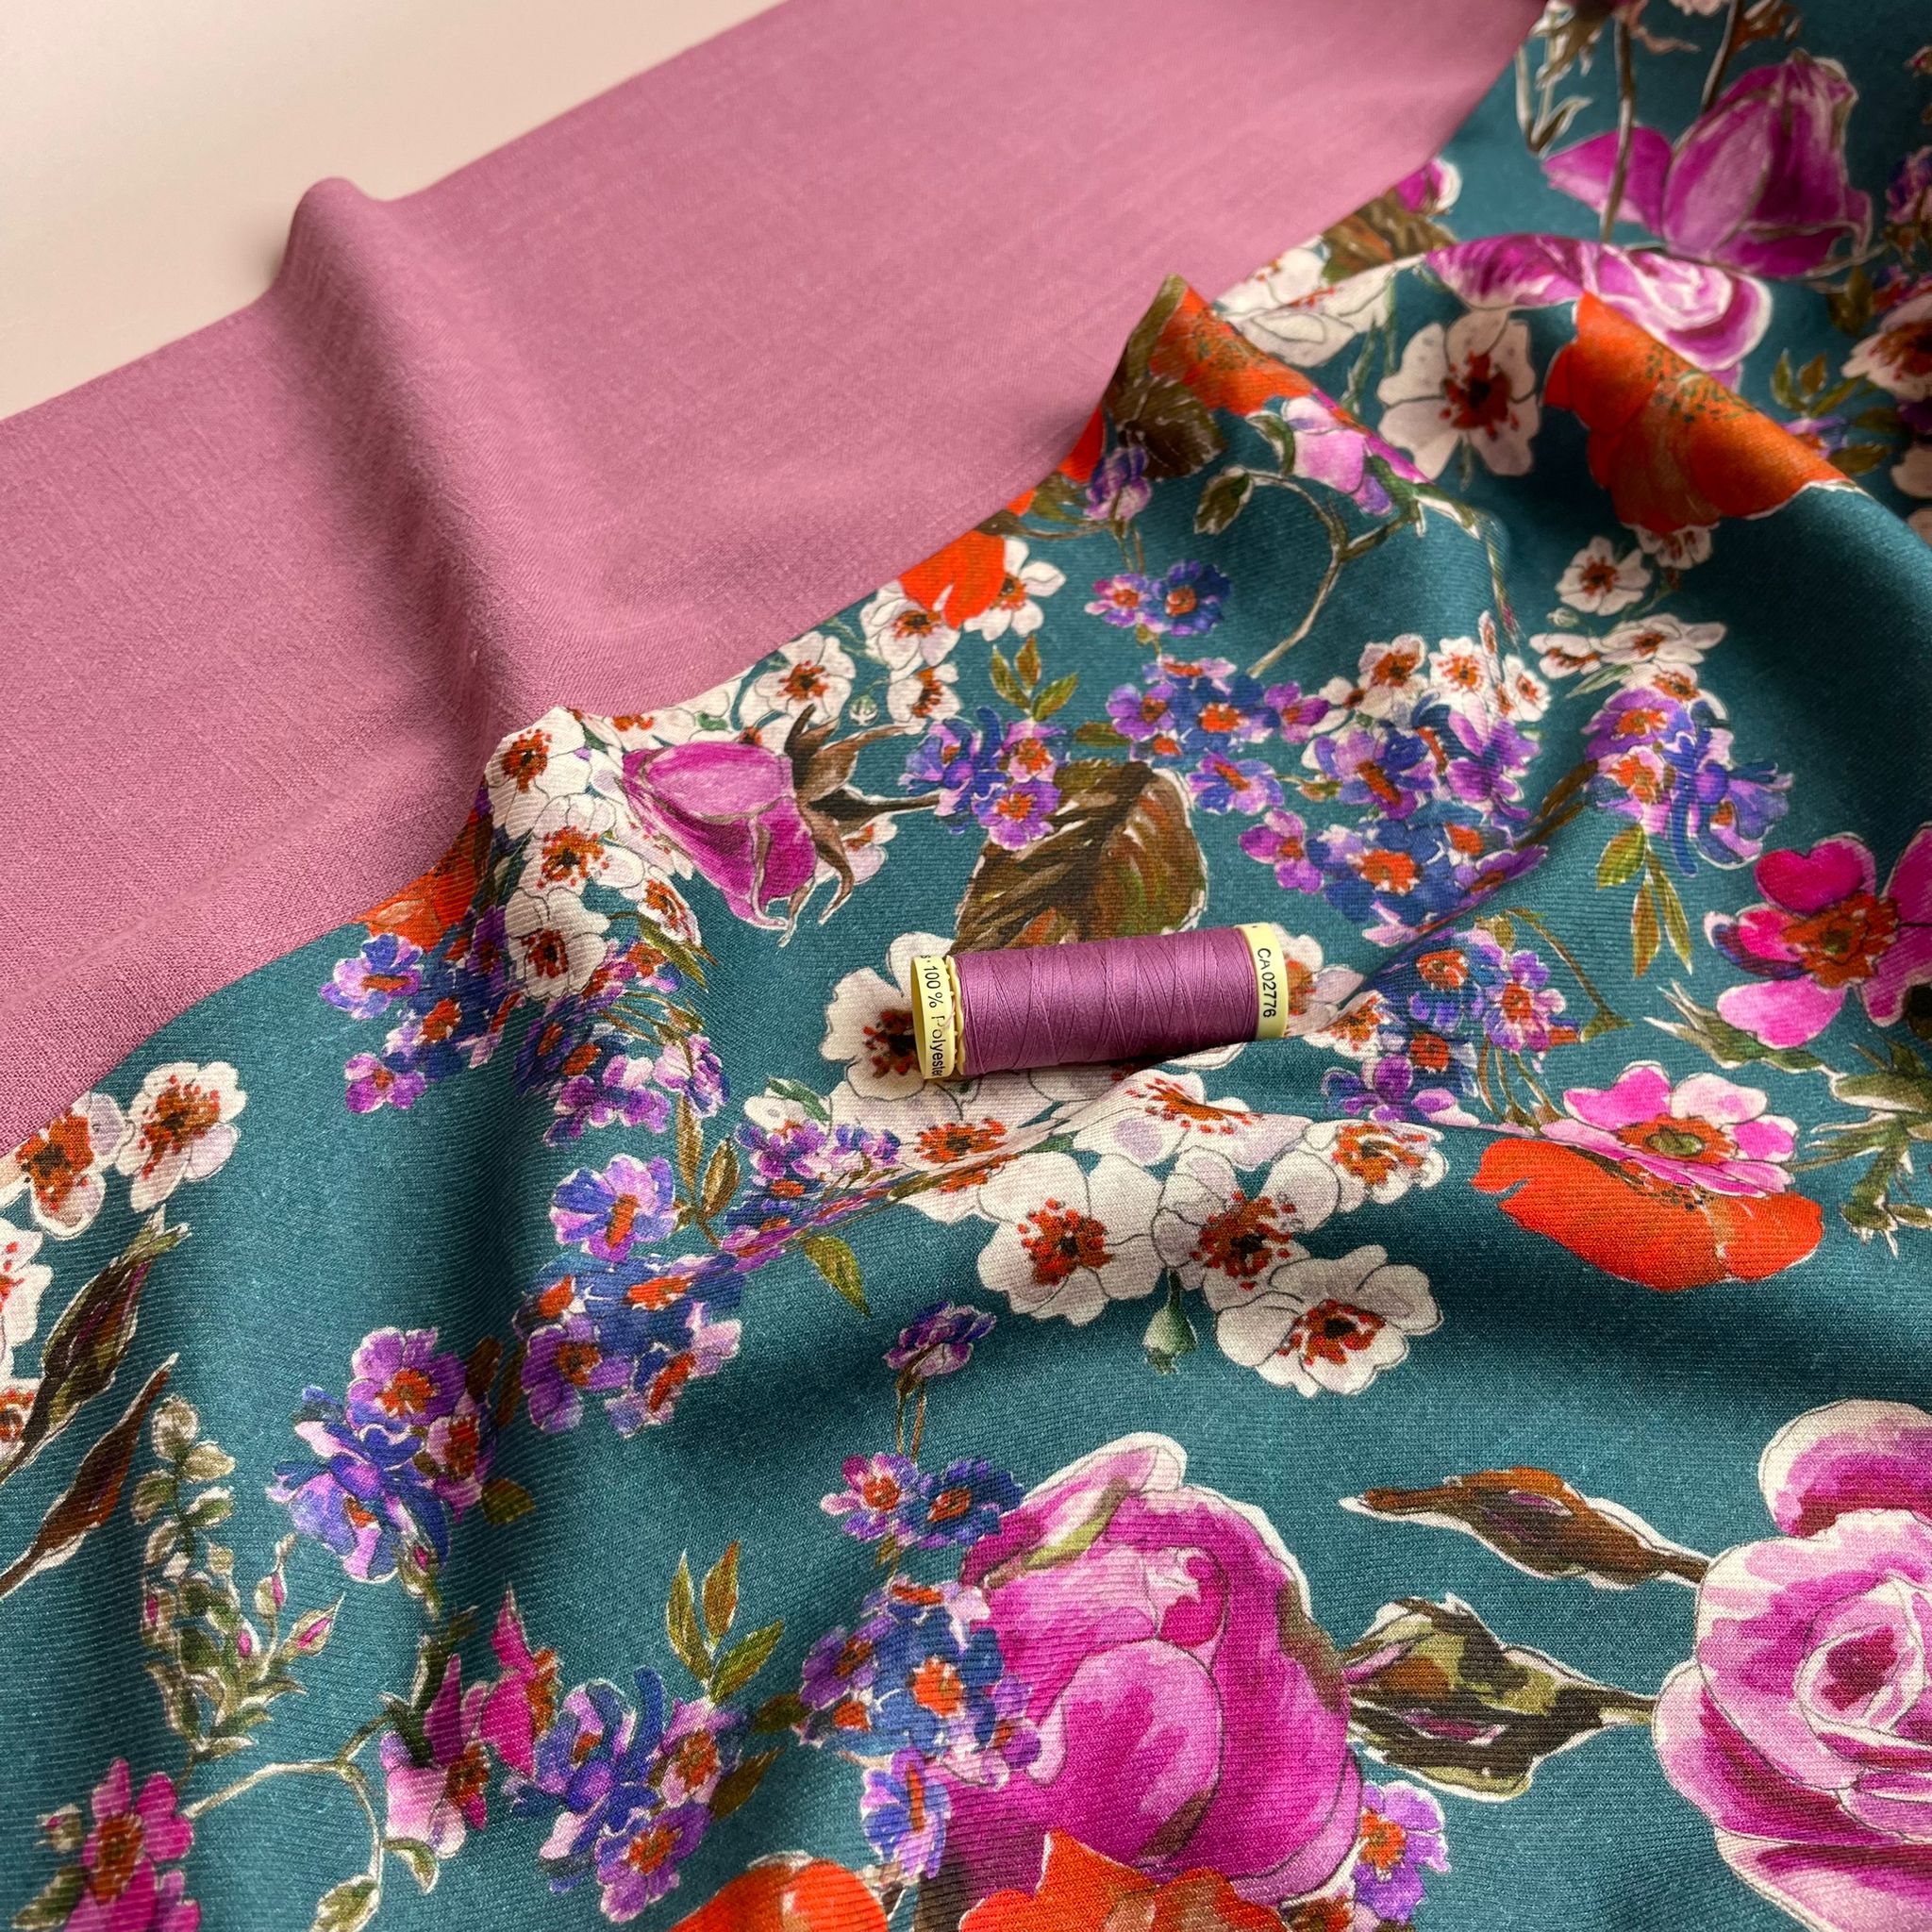 Flow Pink Viscose Linen Blend Dress Fabric